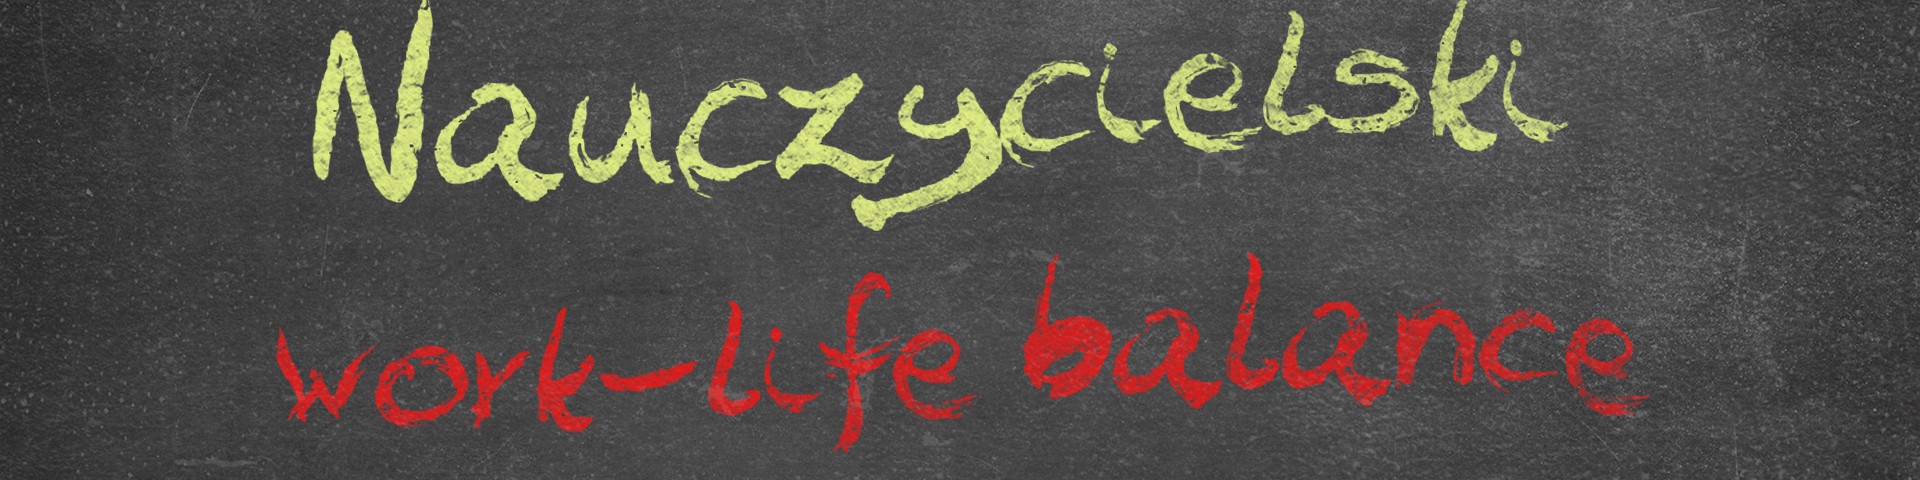 Horyzonty polskiej edukacji – work-life balance